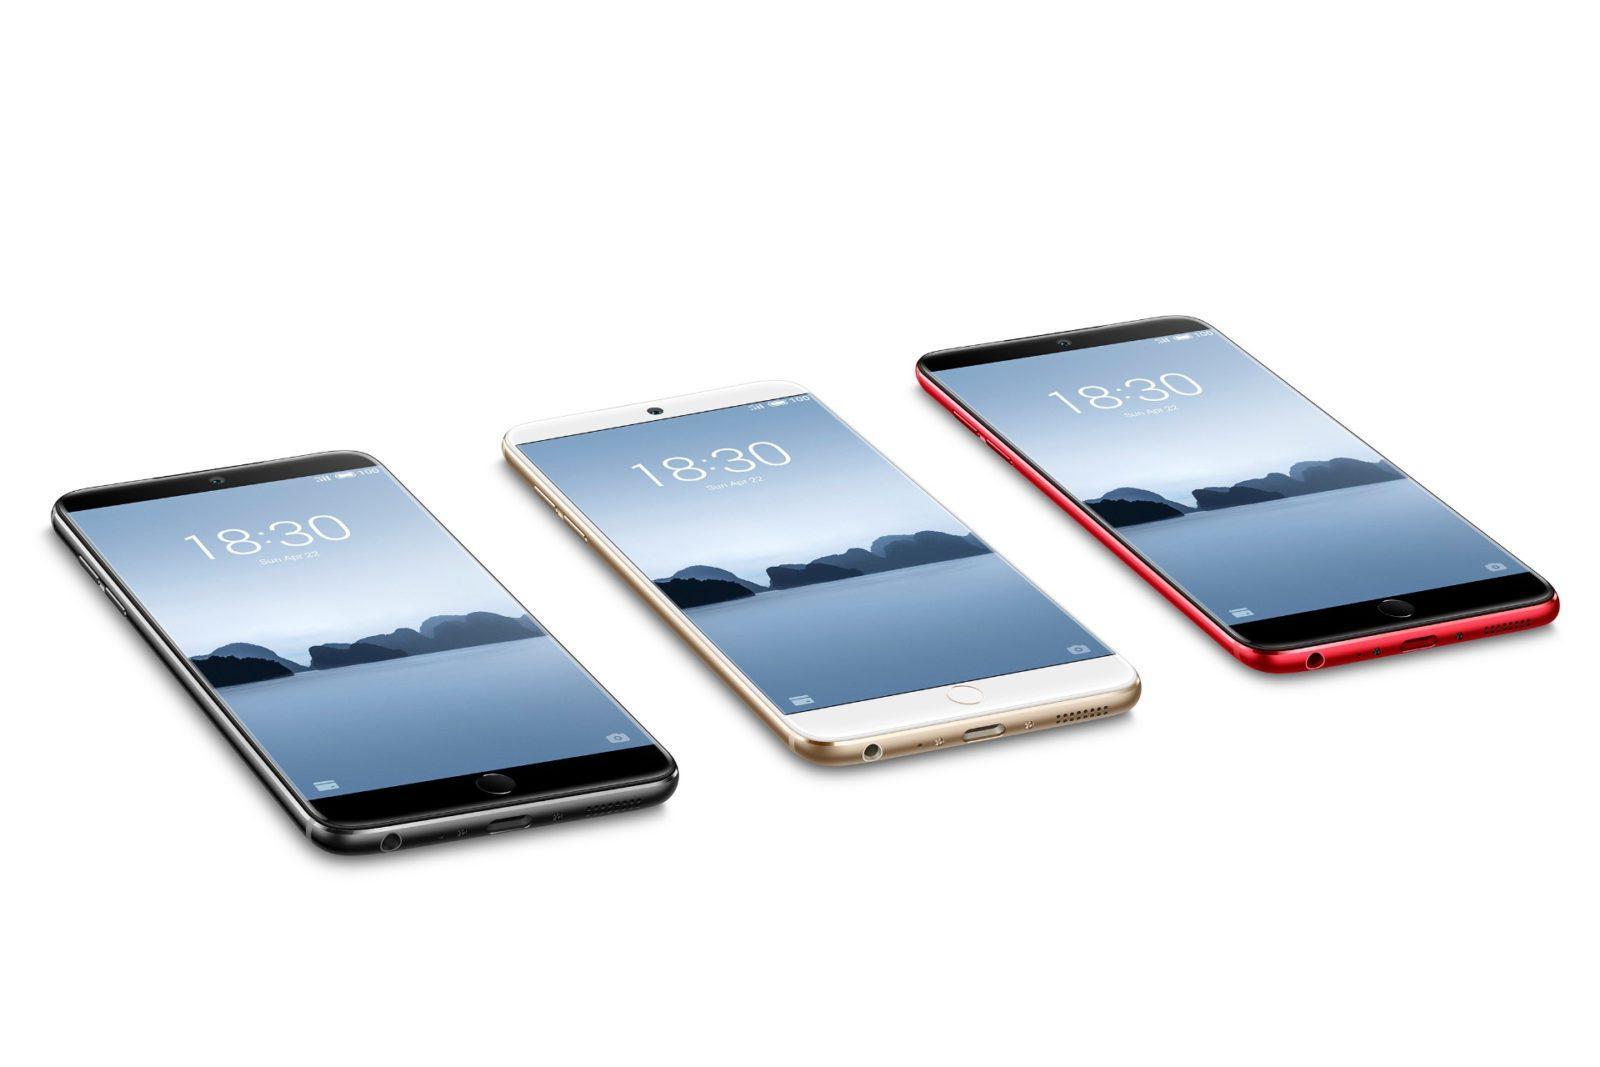 Meizu 15 Lite स्मार्टफोन लाँच हुआ, जानिये पूरी खबर